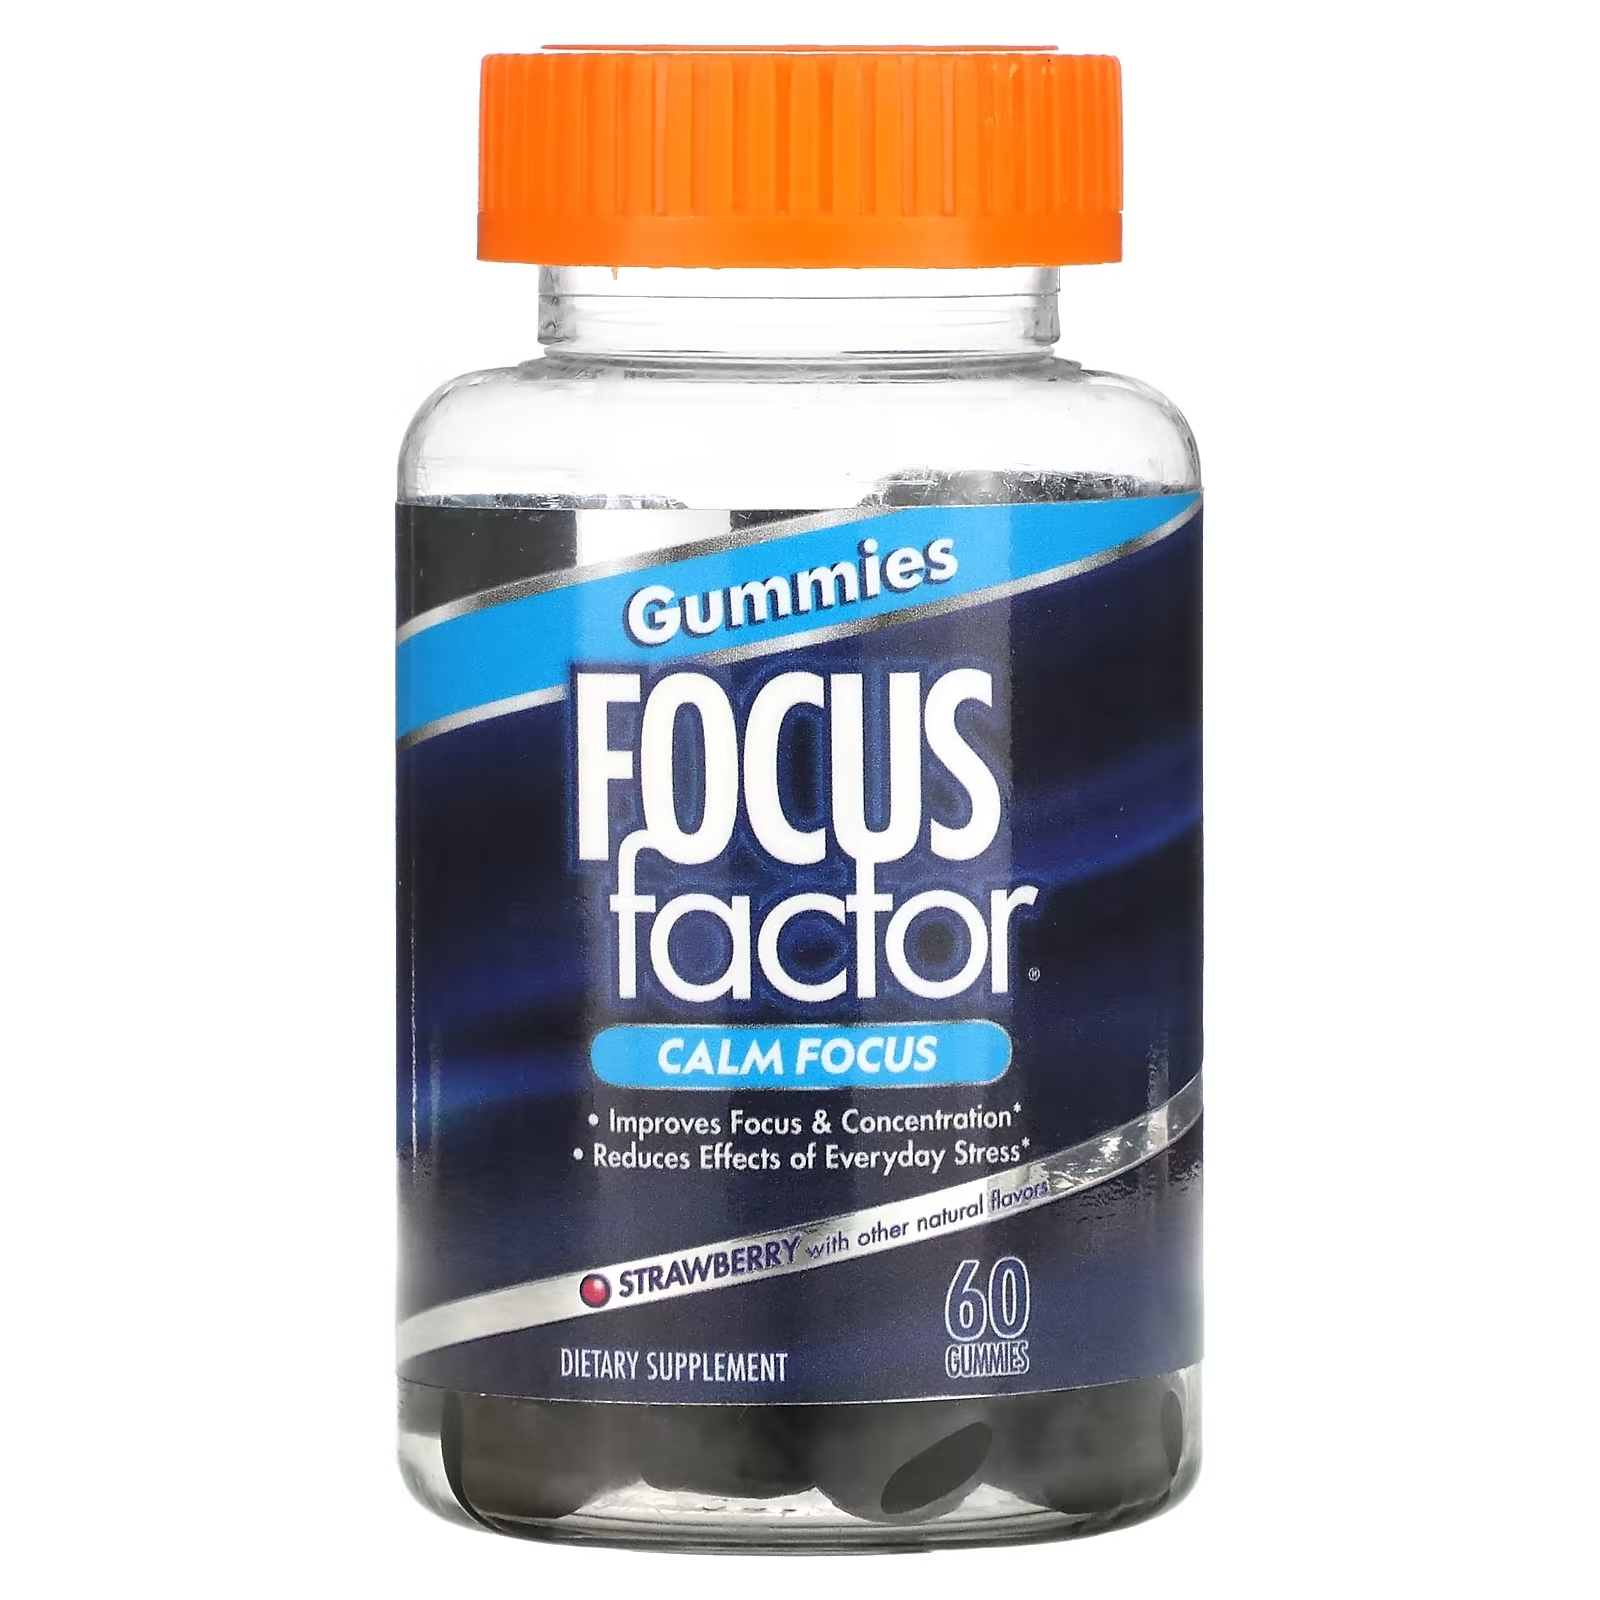 Focus Factor Calm Focus клубника, 60 жевательных таблеток focus factor blue light vision 60 капсул